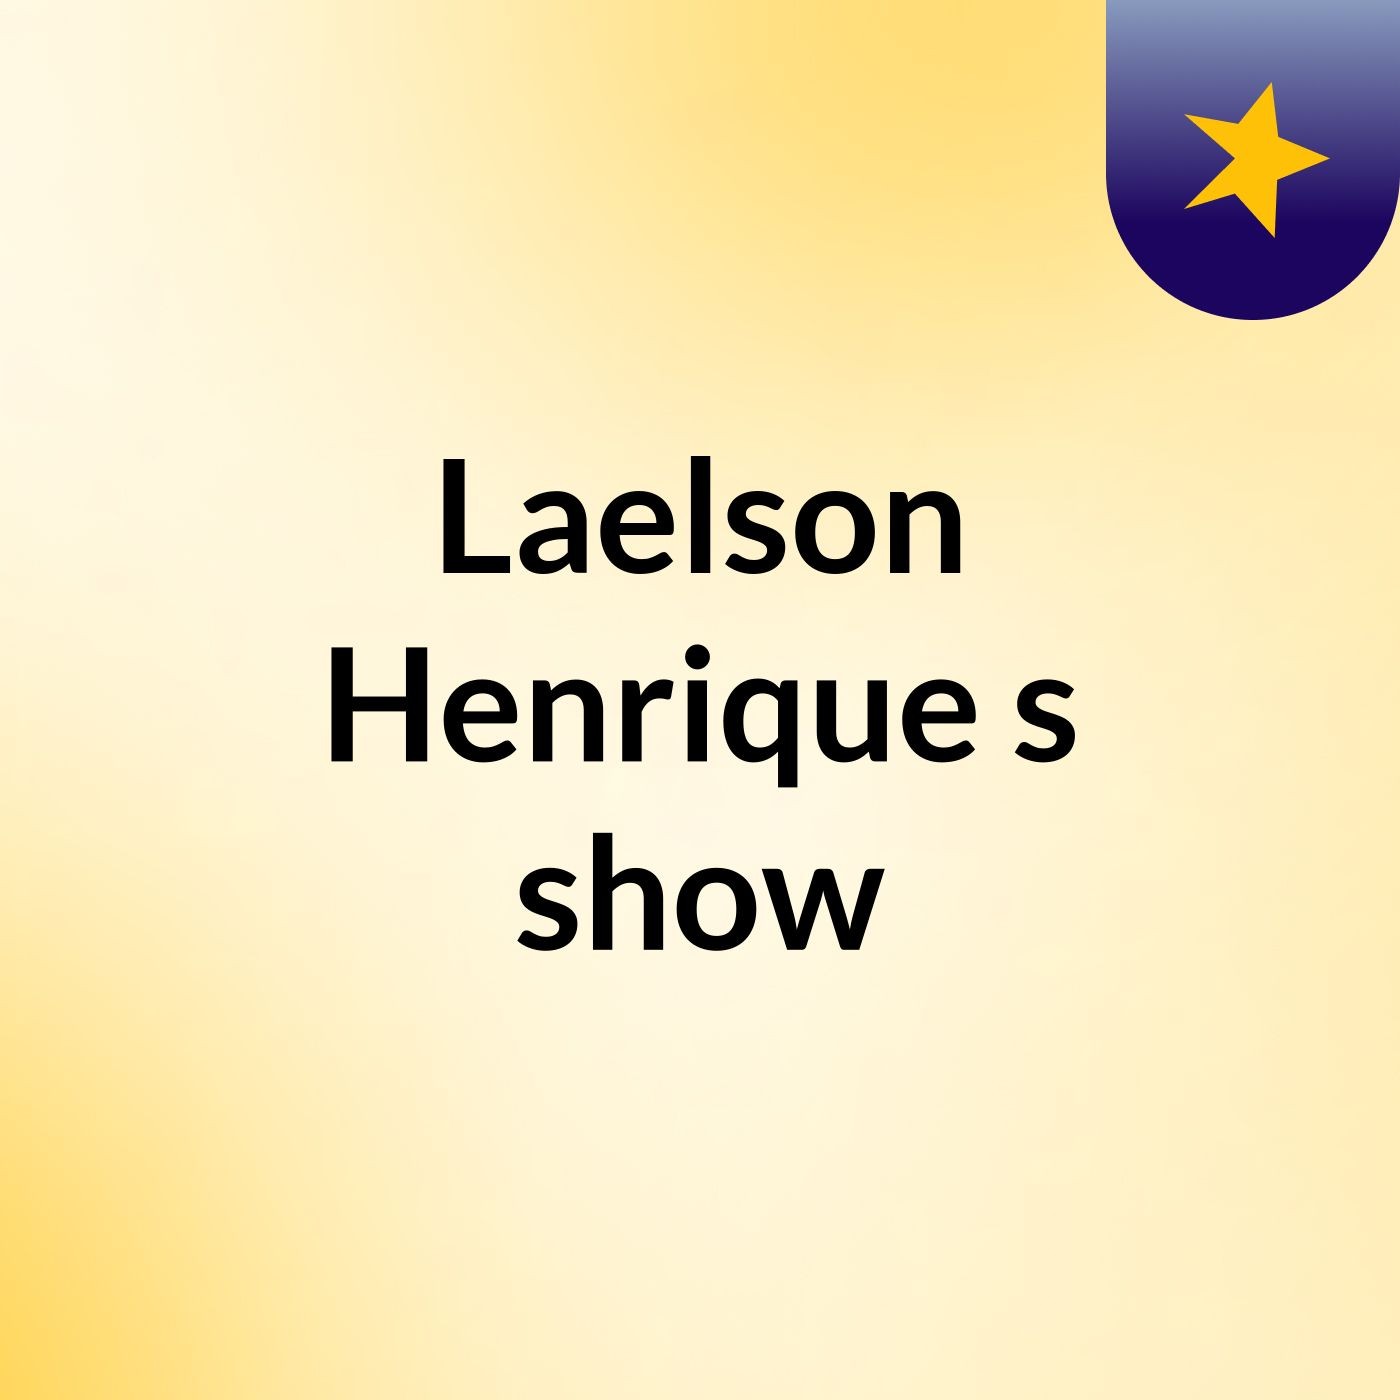 Laelson Henrique's show